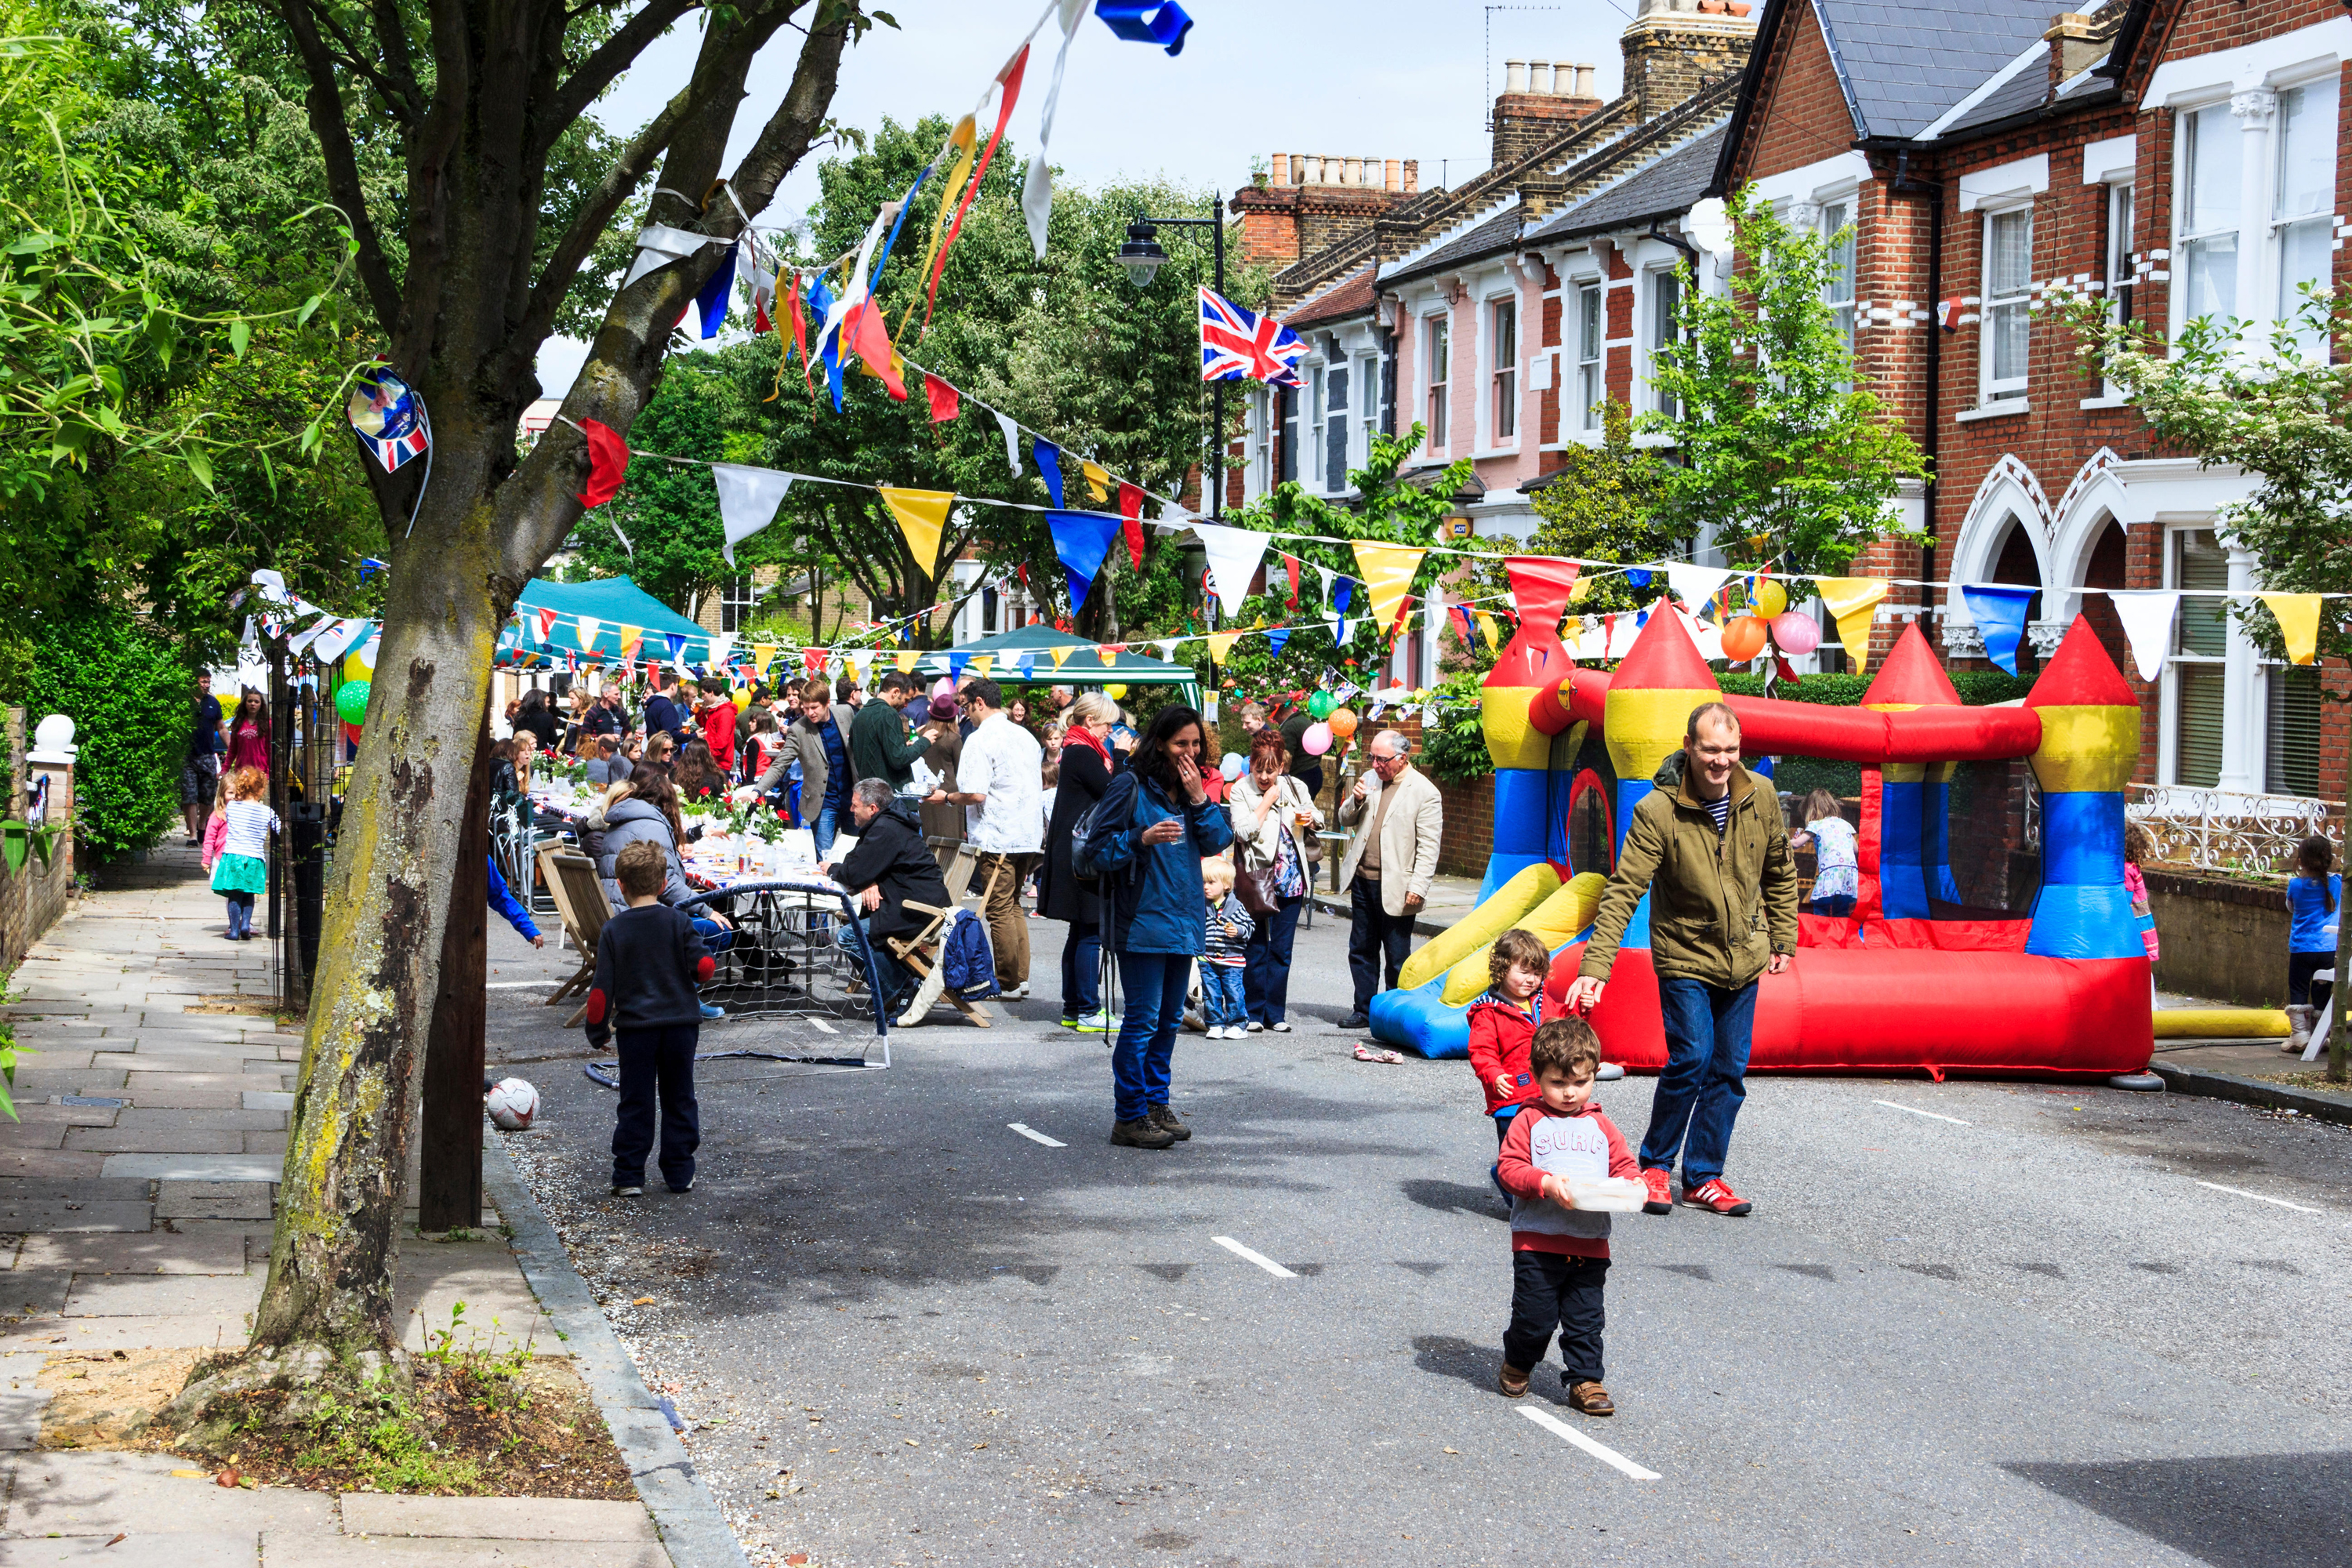 A Jubilee street party